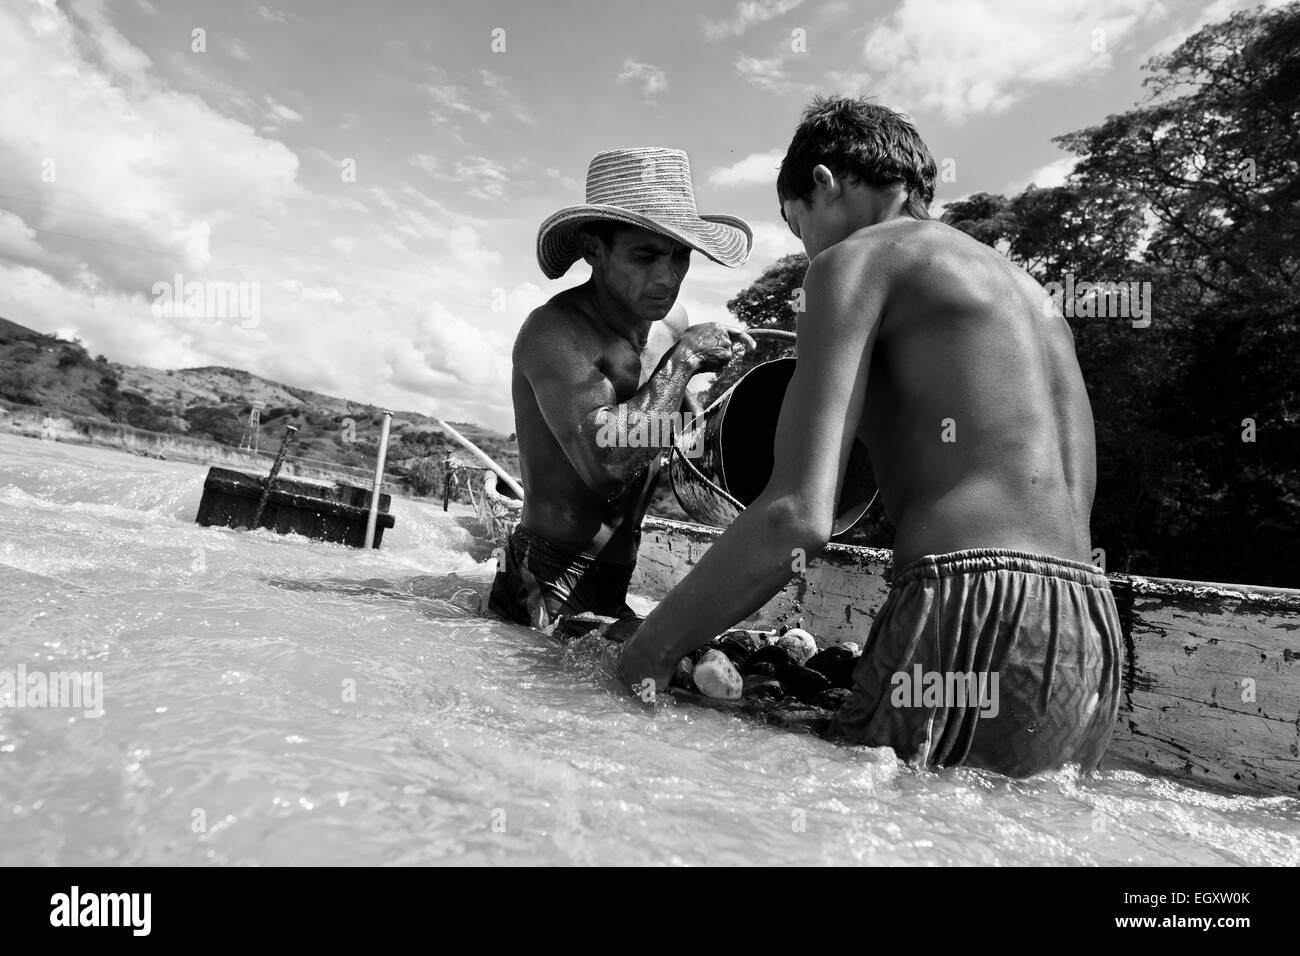 Les mineurs de sable colombien décharger un seau rempli de gravier dans leur bateau au milieu de la rivière à Cartago, Colombie. Banque D'Images